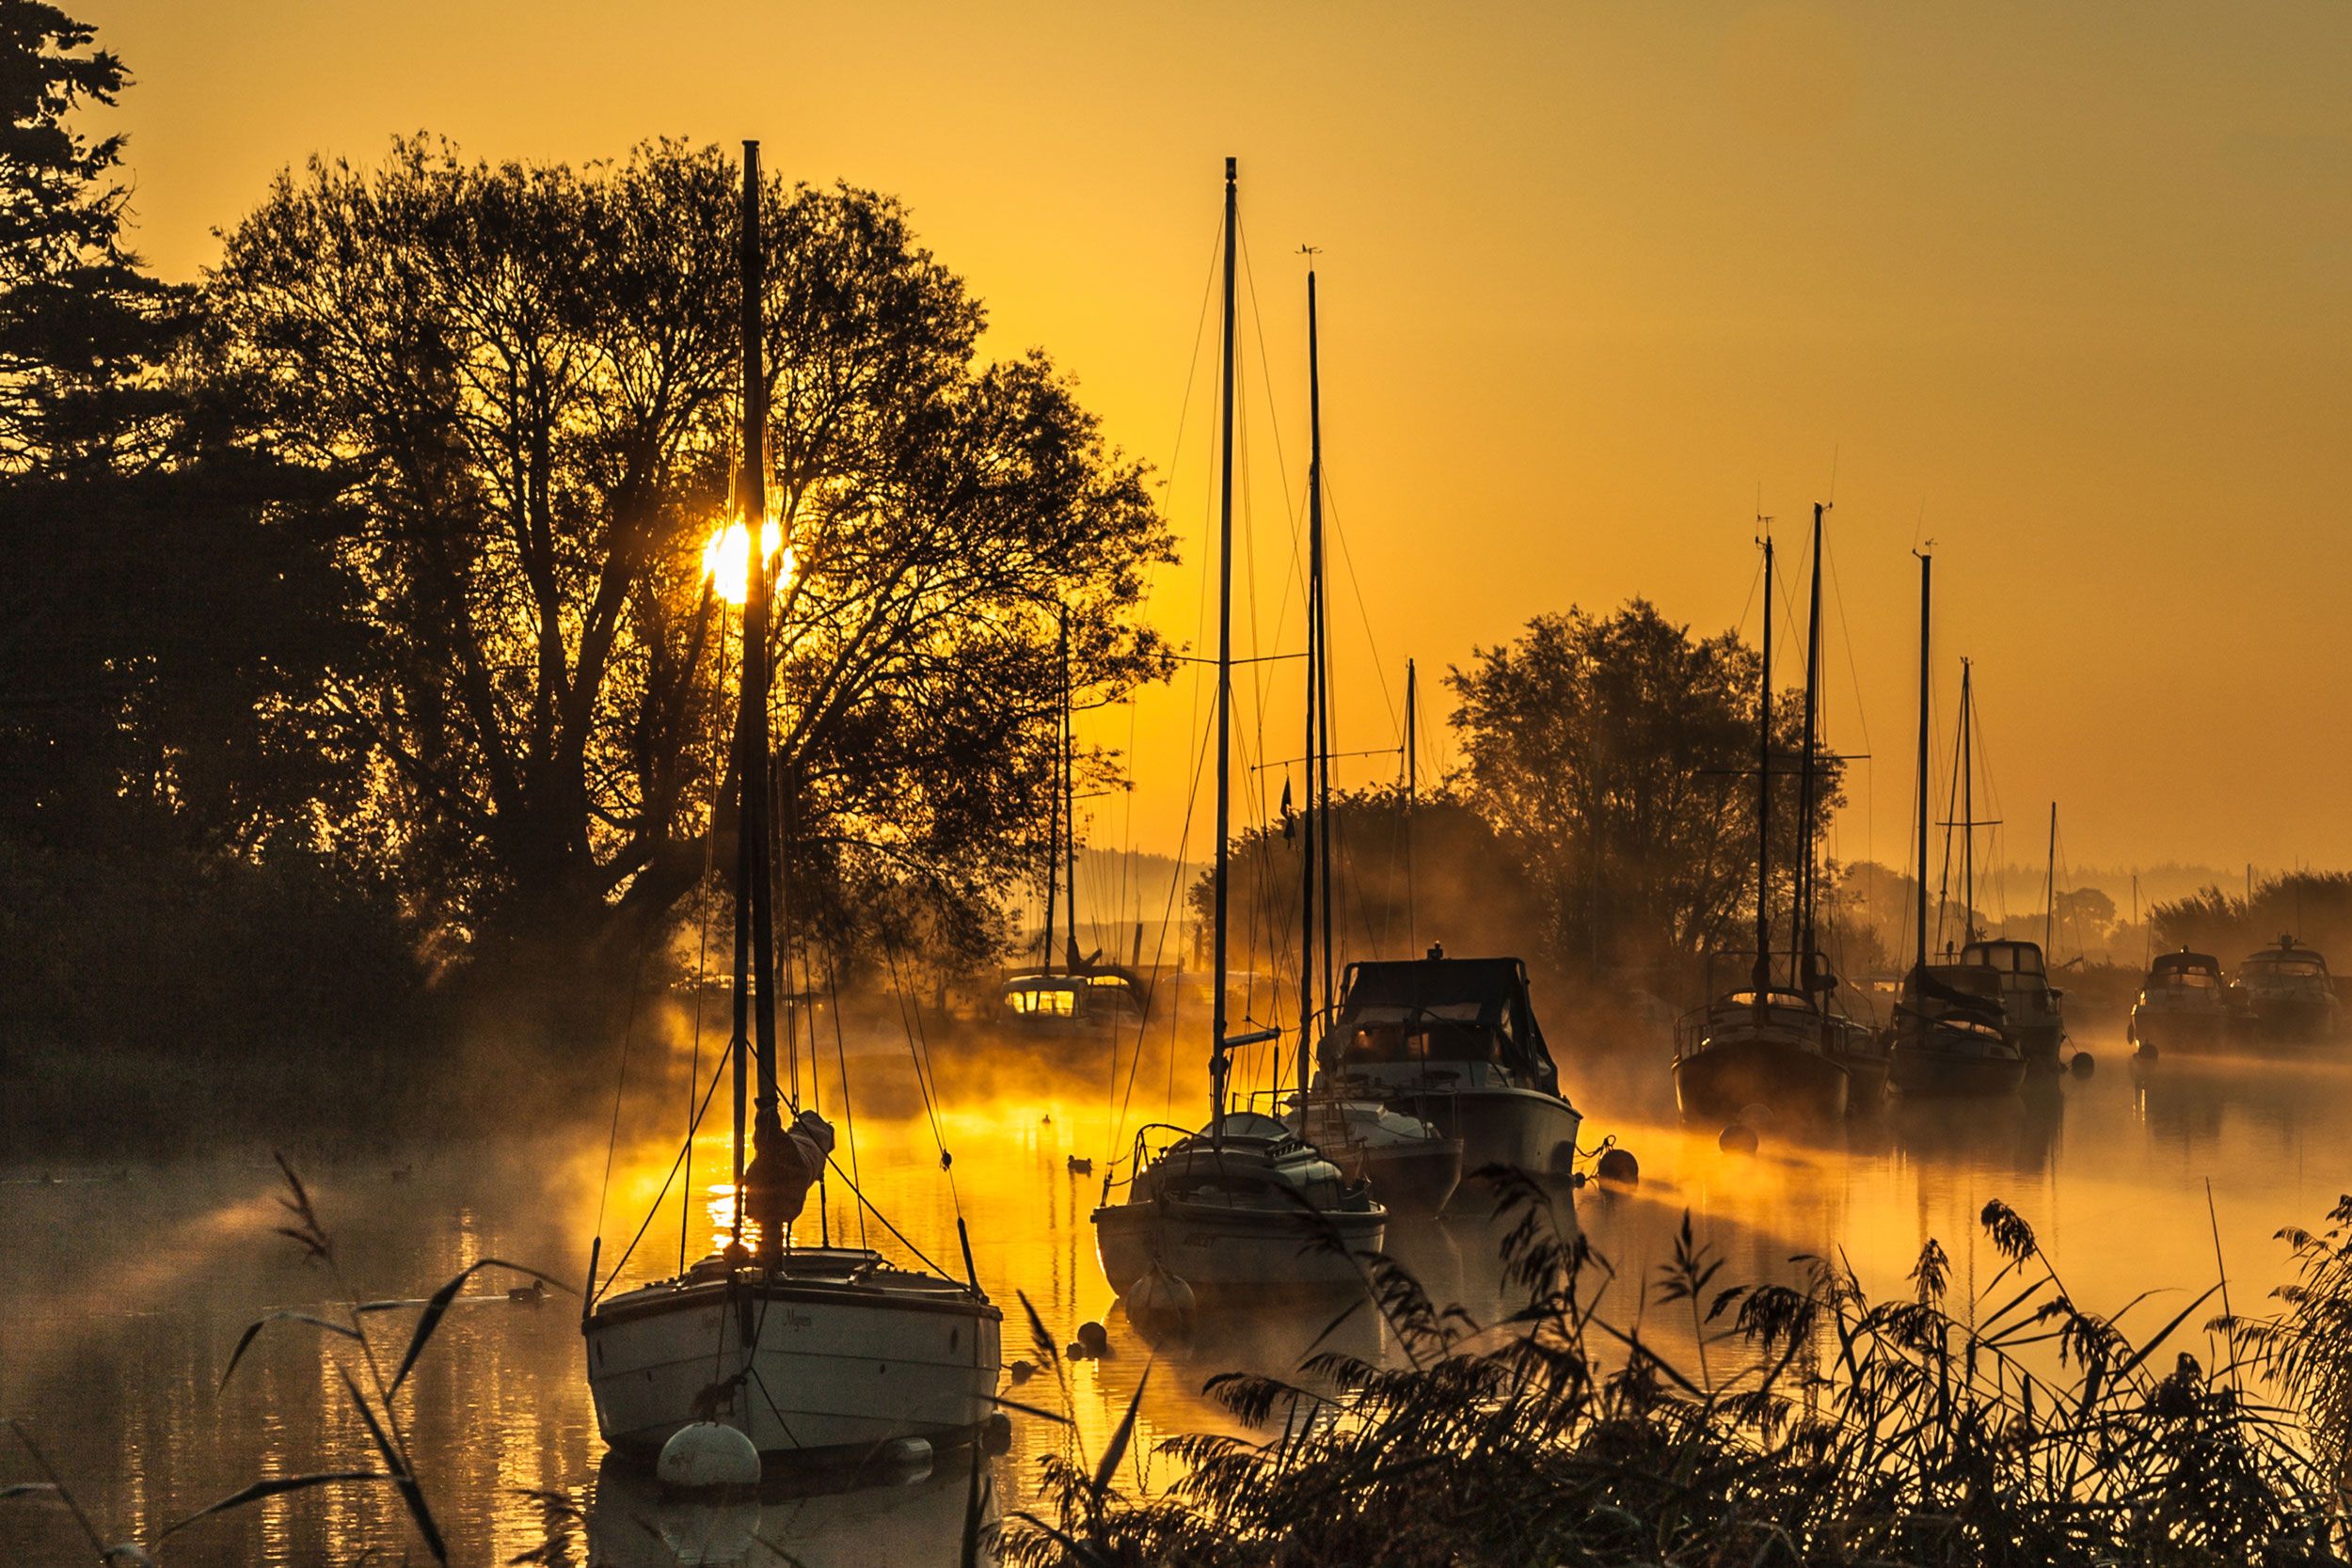 Romantisches Sonnenaufgangsbild mit Booten am Fluss von Wareham